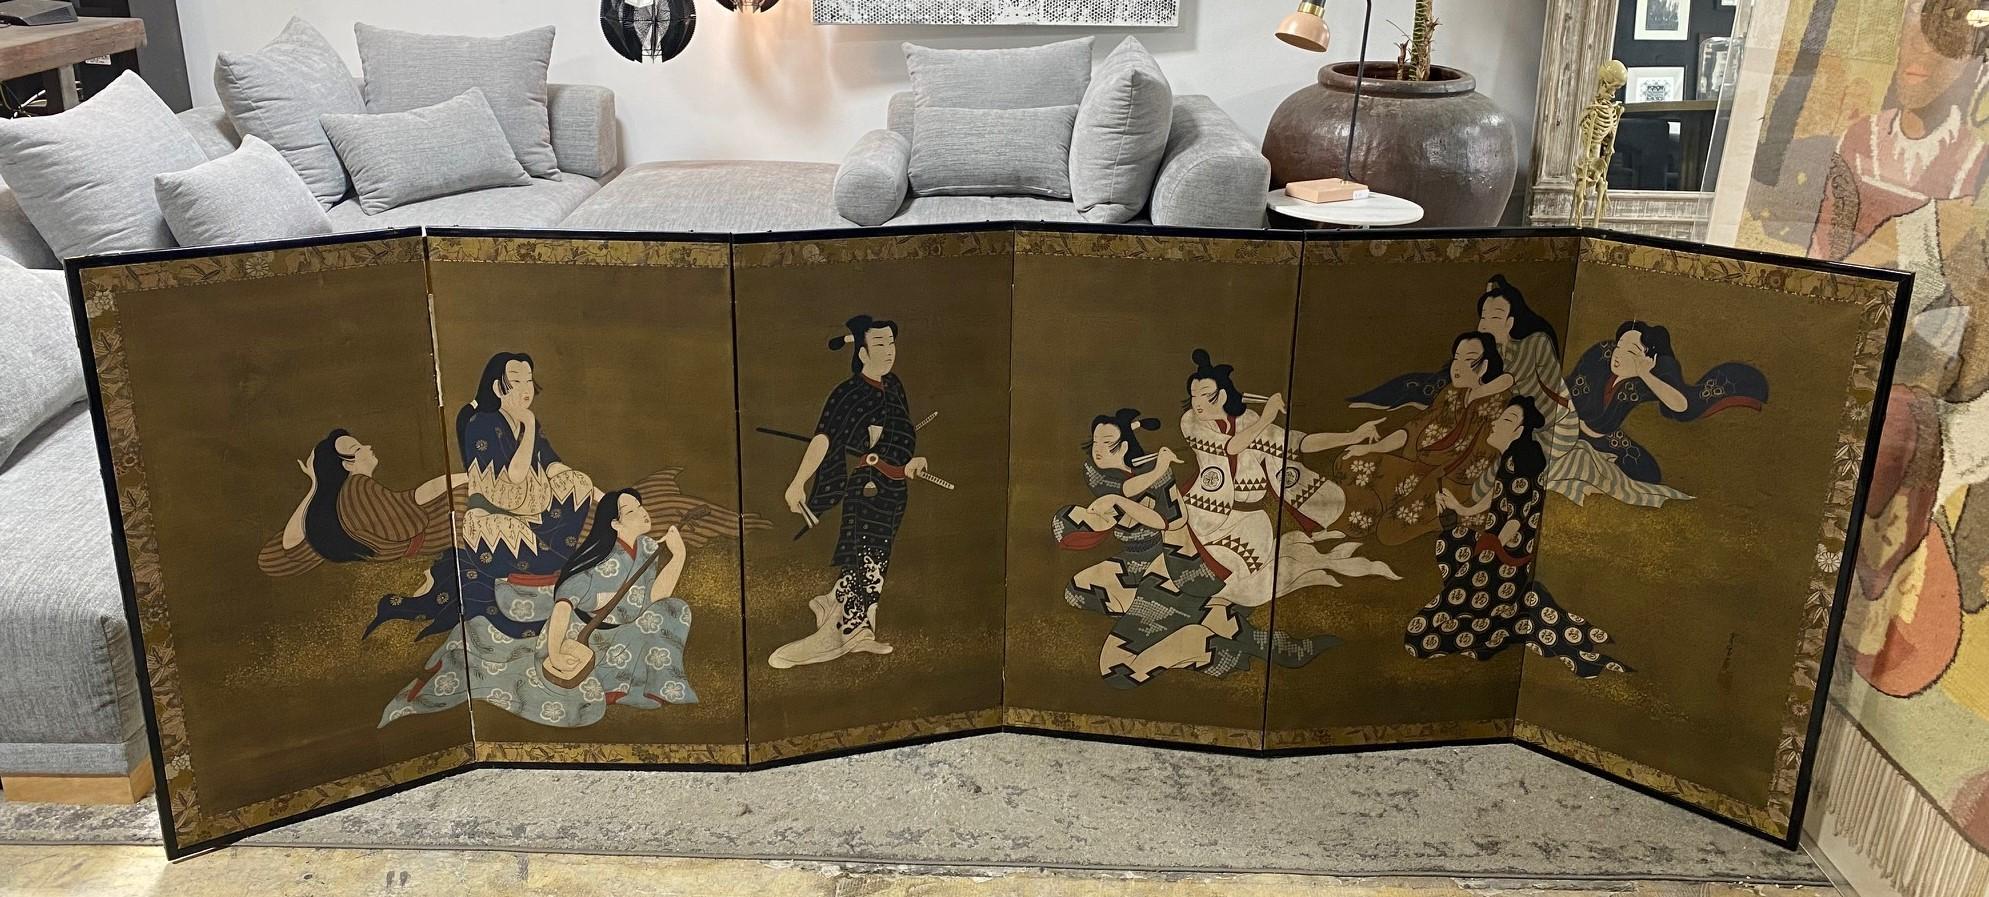 Magnifique et fascinant paravent japonais Byobu à six panneaux, peint à la main, représentant une scène de cour androgyne ou érotique plutôt engageante (on nous a suggéré qu'il pourrait s'agir d'une fête lesbienne).  La figure centrale et les